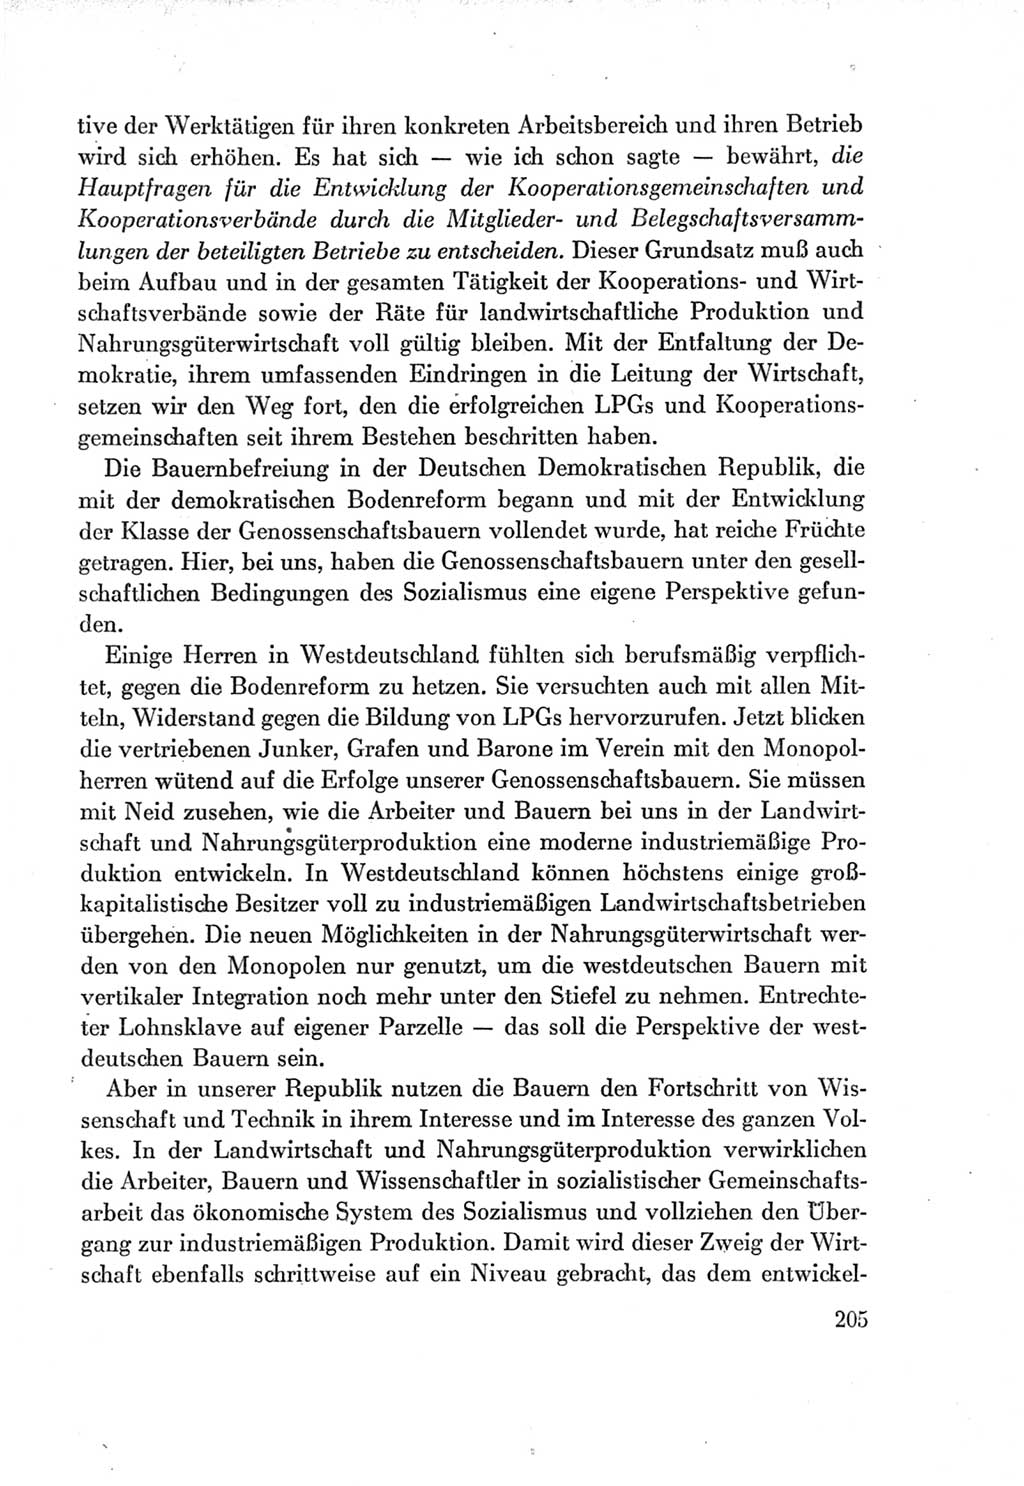 Protokoll der Verhandlungen des Ⅶ. Parteitages der Sozialistischen Einheitspartei Deutschlands (SED) [Deutsche Demokratische Republik (DDR)] 1967, Band Ⅰ, Seite 205 (Prot. Verh. Ⅶ. PT SED DDR 1967, Bd. Ⅰ, S. 205)